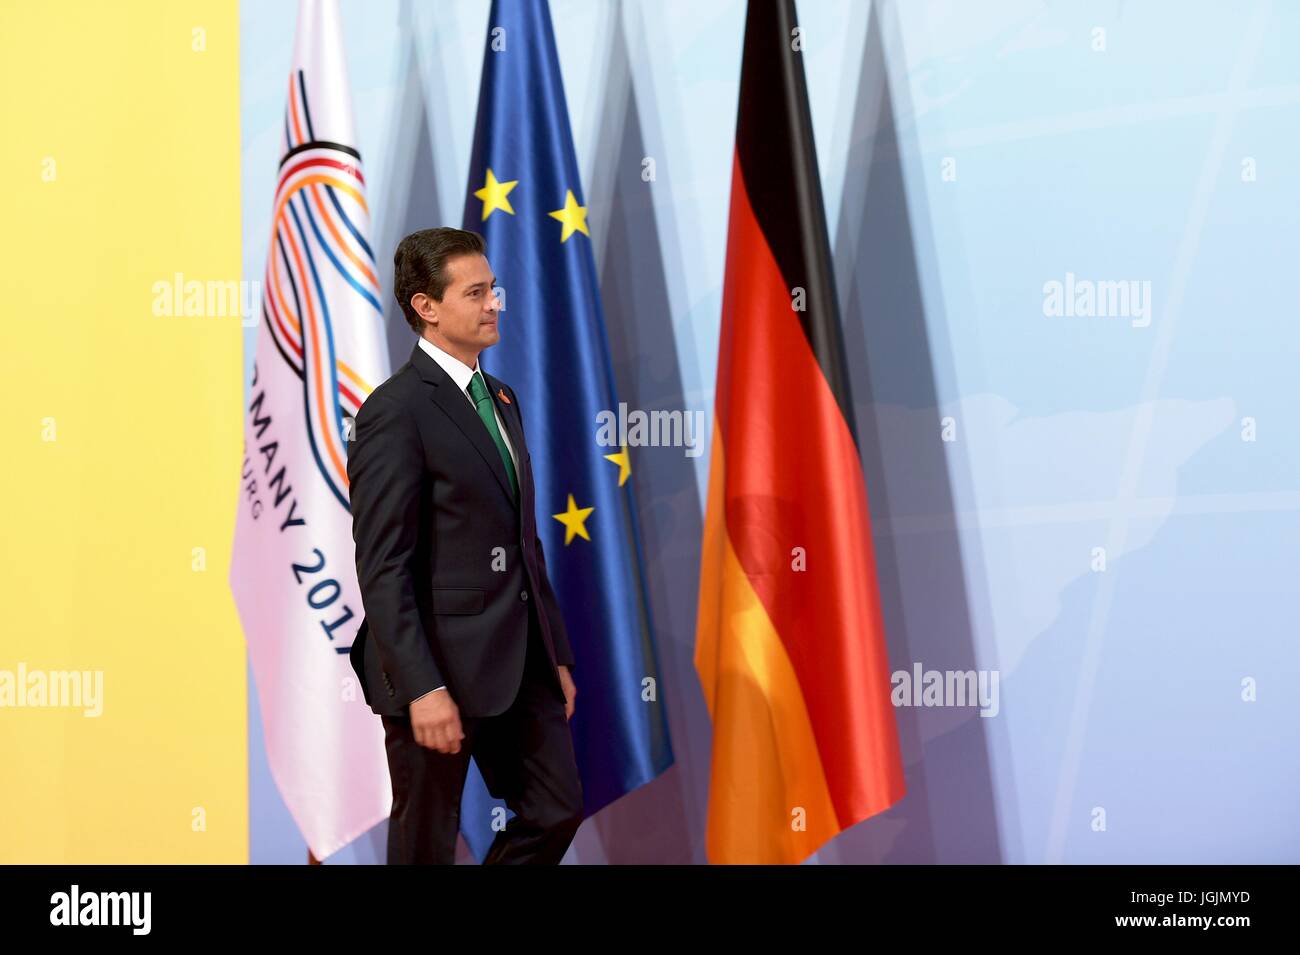 Hamburgo, Alemania. 07 de julio, 2017. El Presidente de México, Enrique Peña Nieto llega al inicio del primer día de la reunión en la cumbre del G20 El 7 de julio de 2017 en Hamburgo, Alemania. Crédito: Planetpix/Alamy Live News Foto de stock